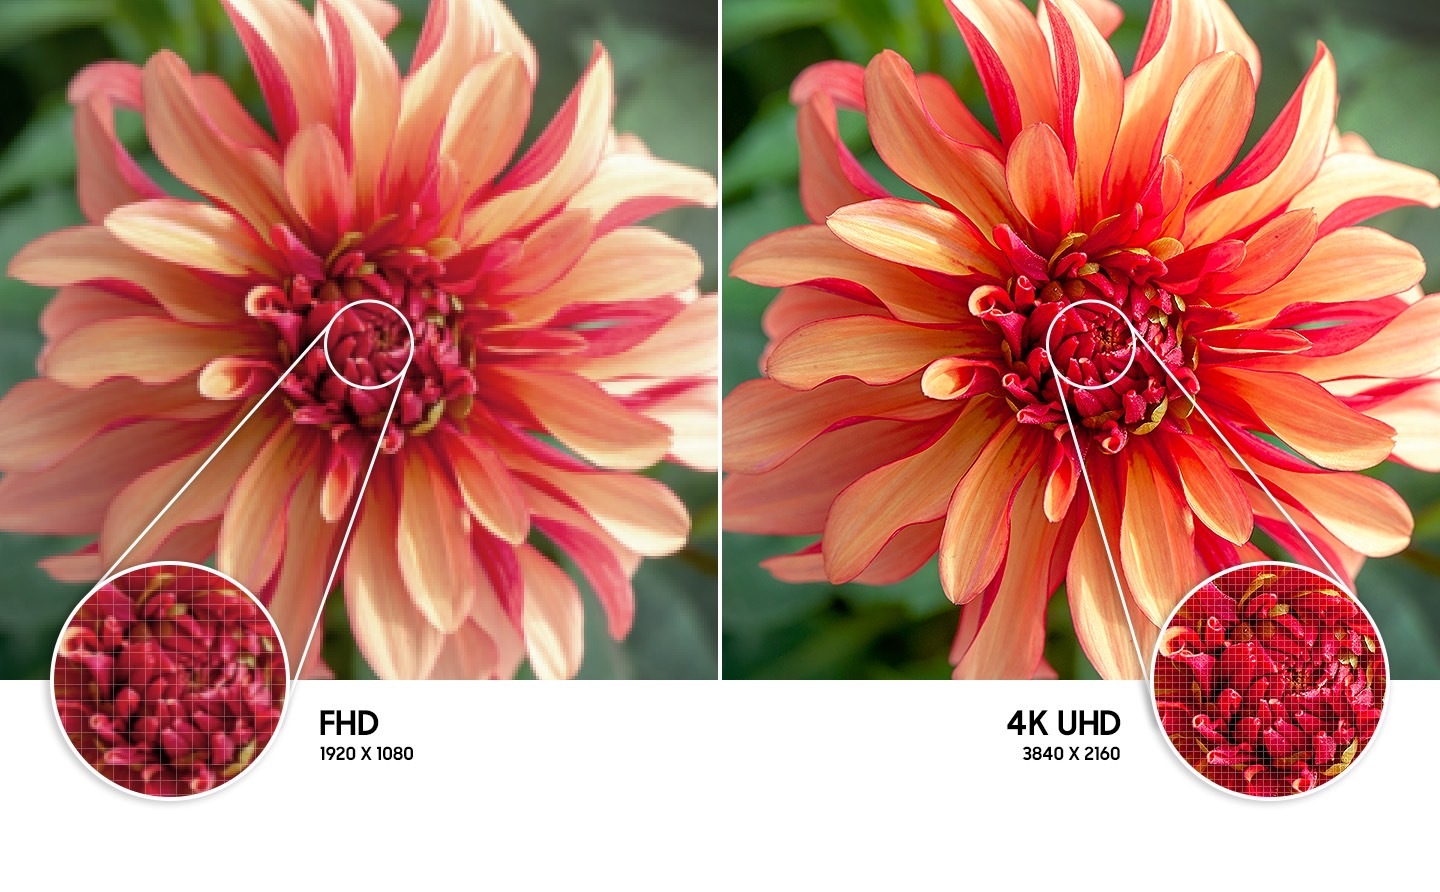 تُظهر صورة الزهرة الموجودة على اليمين مقارنة باليسار دقة صورة ذات جودة أعلى تم إنشاؤها بواسطة تقنية 4K UHD.